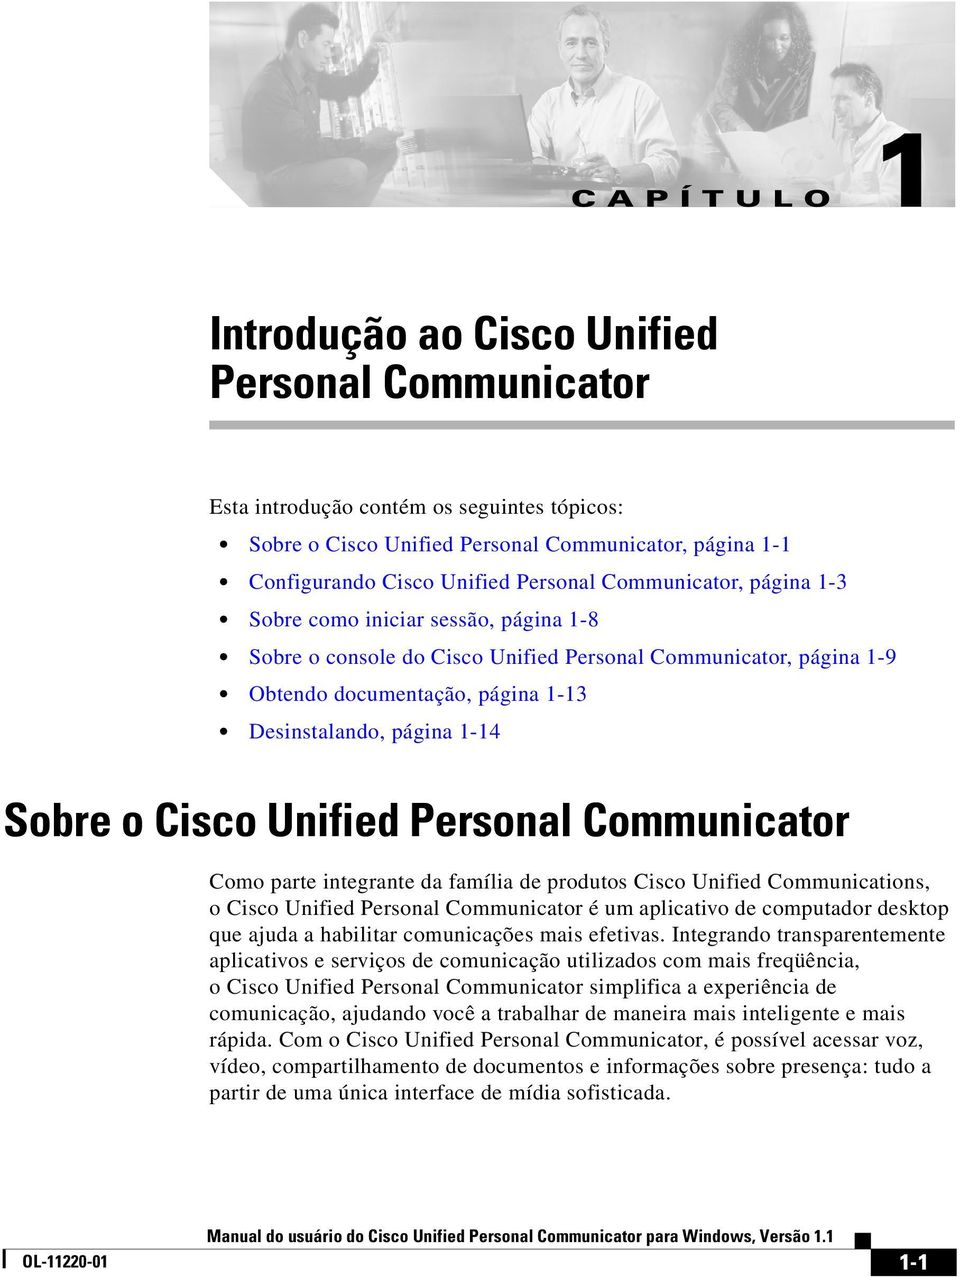 Cisco Unified Personal Communicator Como parte integrante da família de produtos Cisco Unified Communications, o Cisco Unified Personal Communicator é um aplicativo de computador desktop que ajuda a